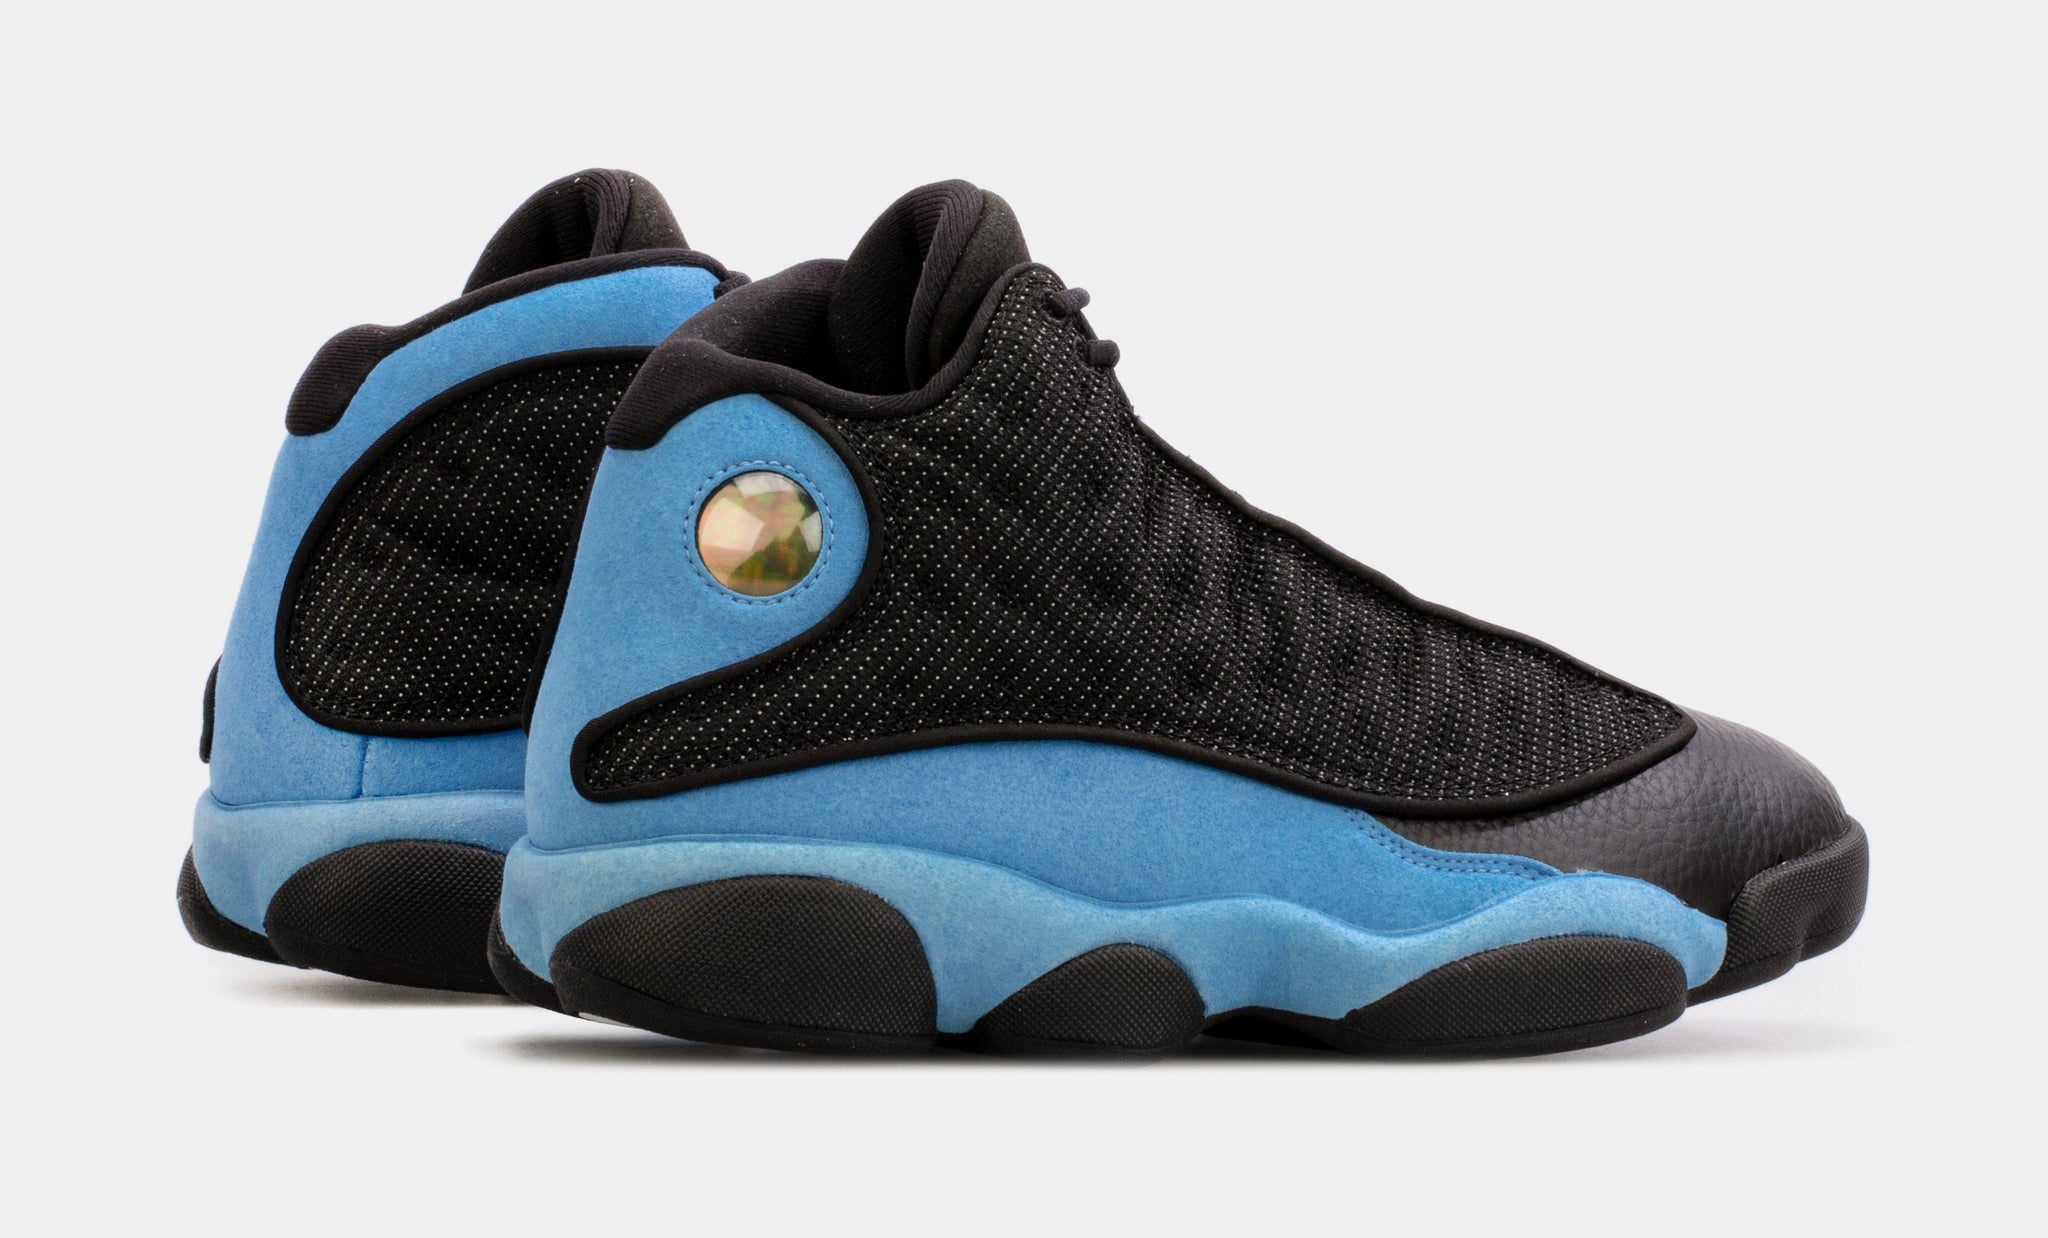  Jordan mens 13 Retro Shoes, Black/University Blue/Black, 7.5